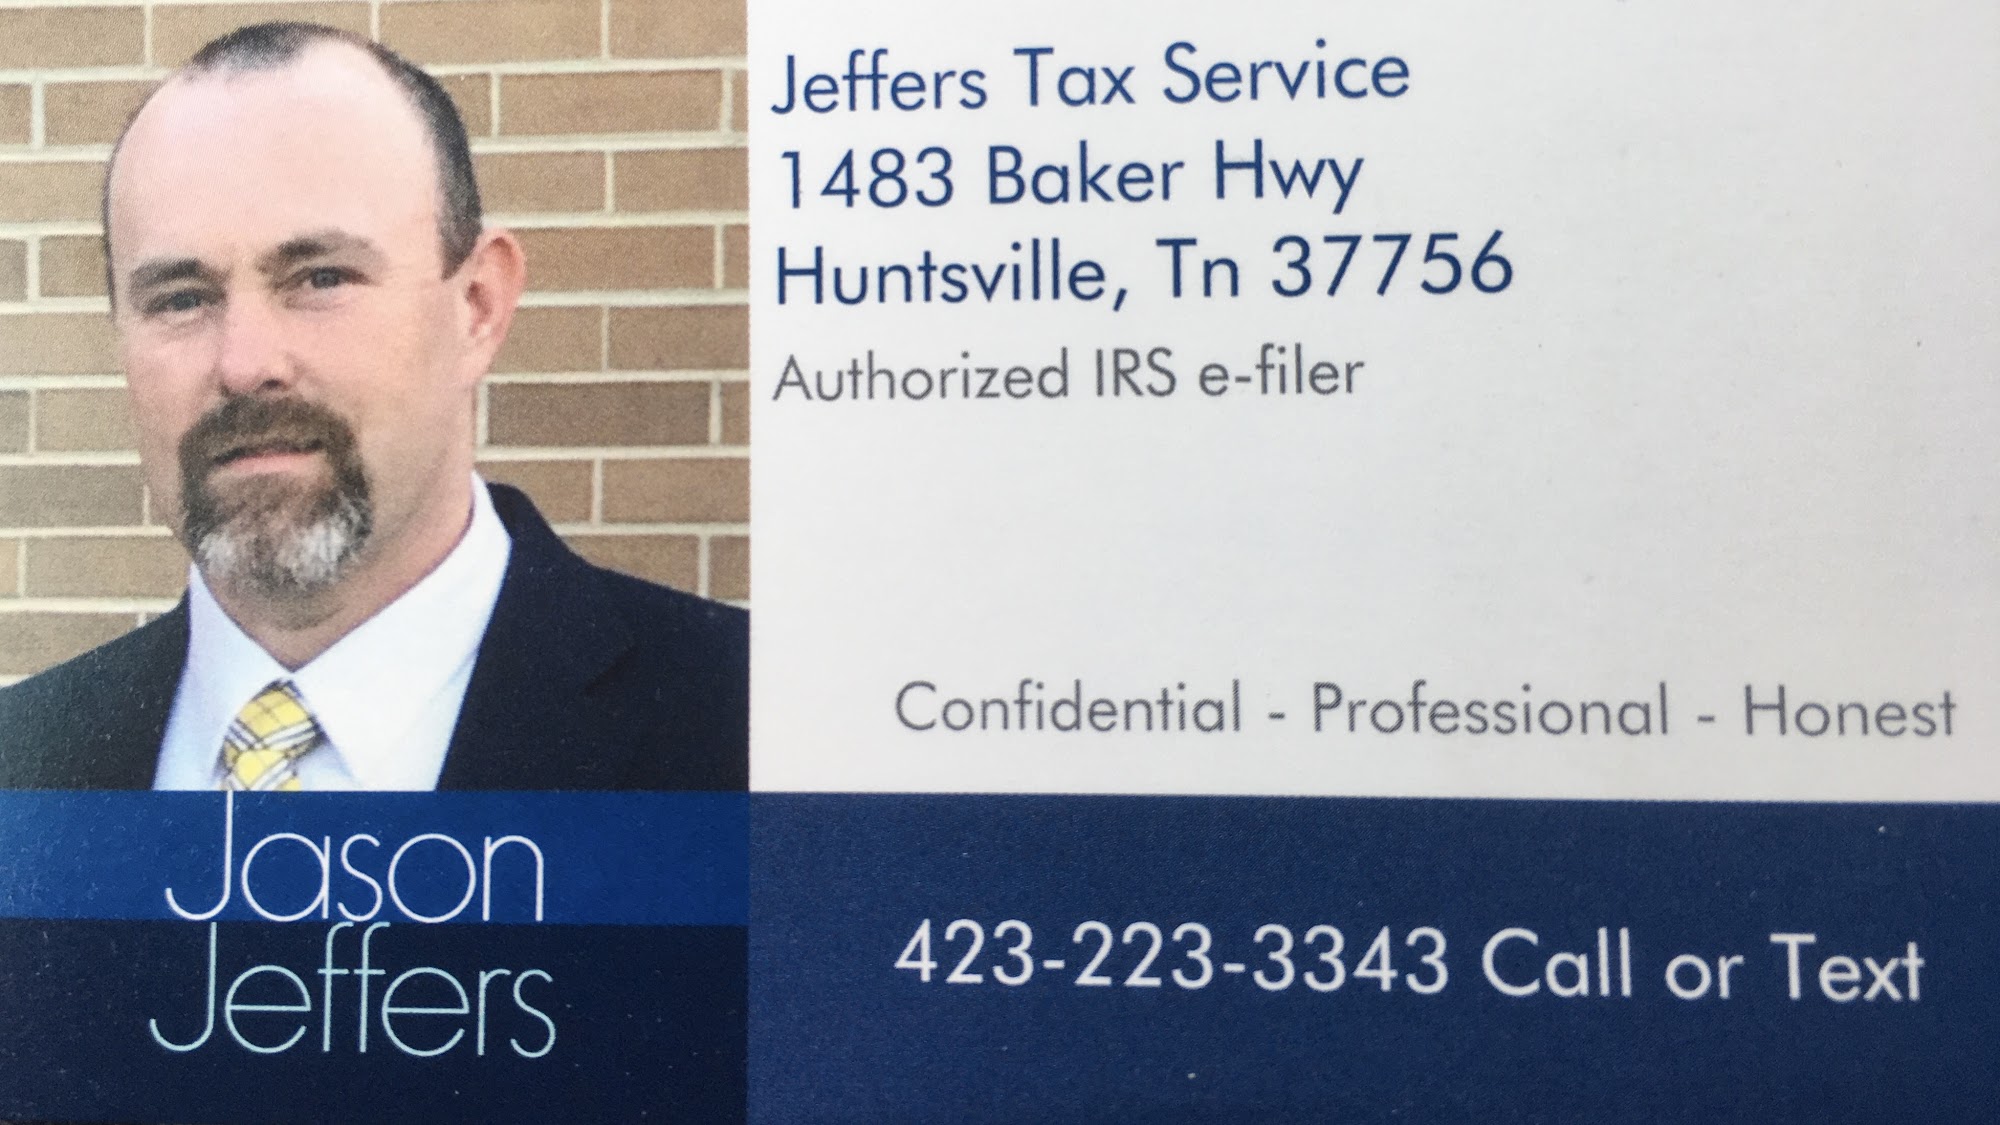 Jeffers Tax Service 1483 Baker Hwy, Huntsville Tennessee 37756